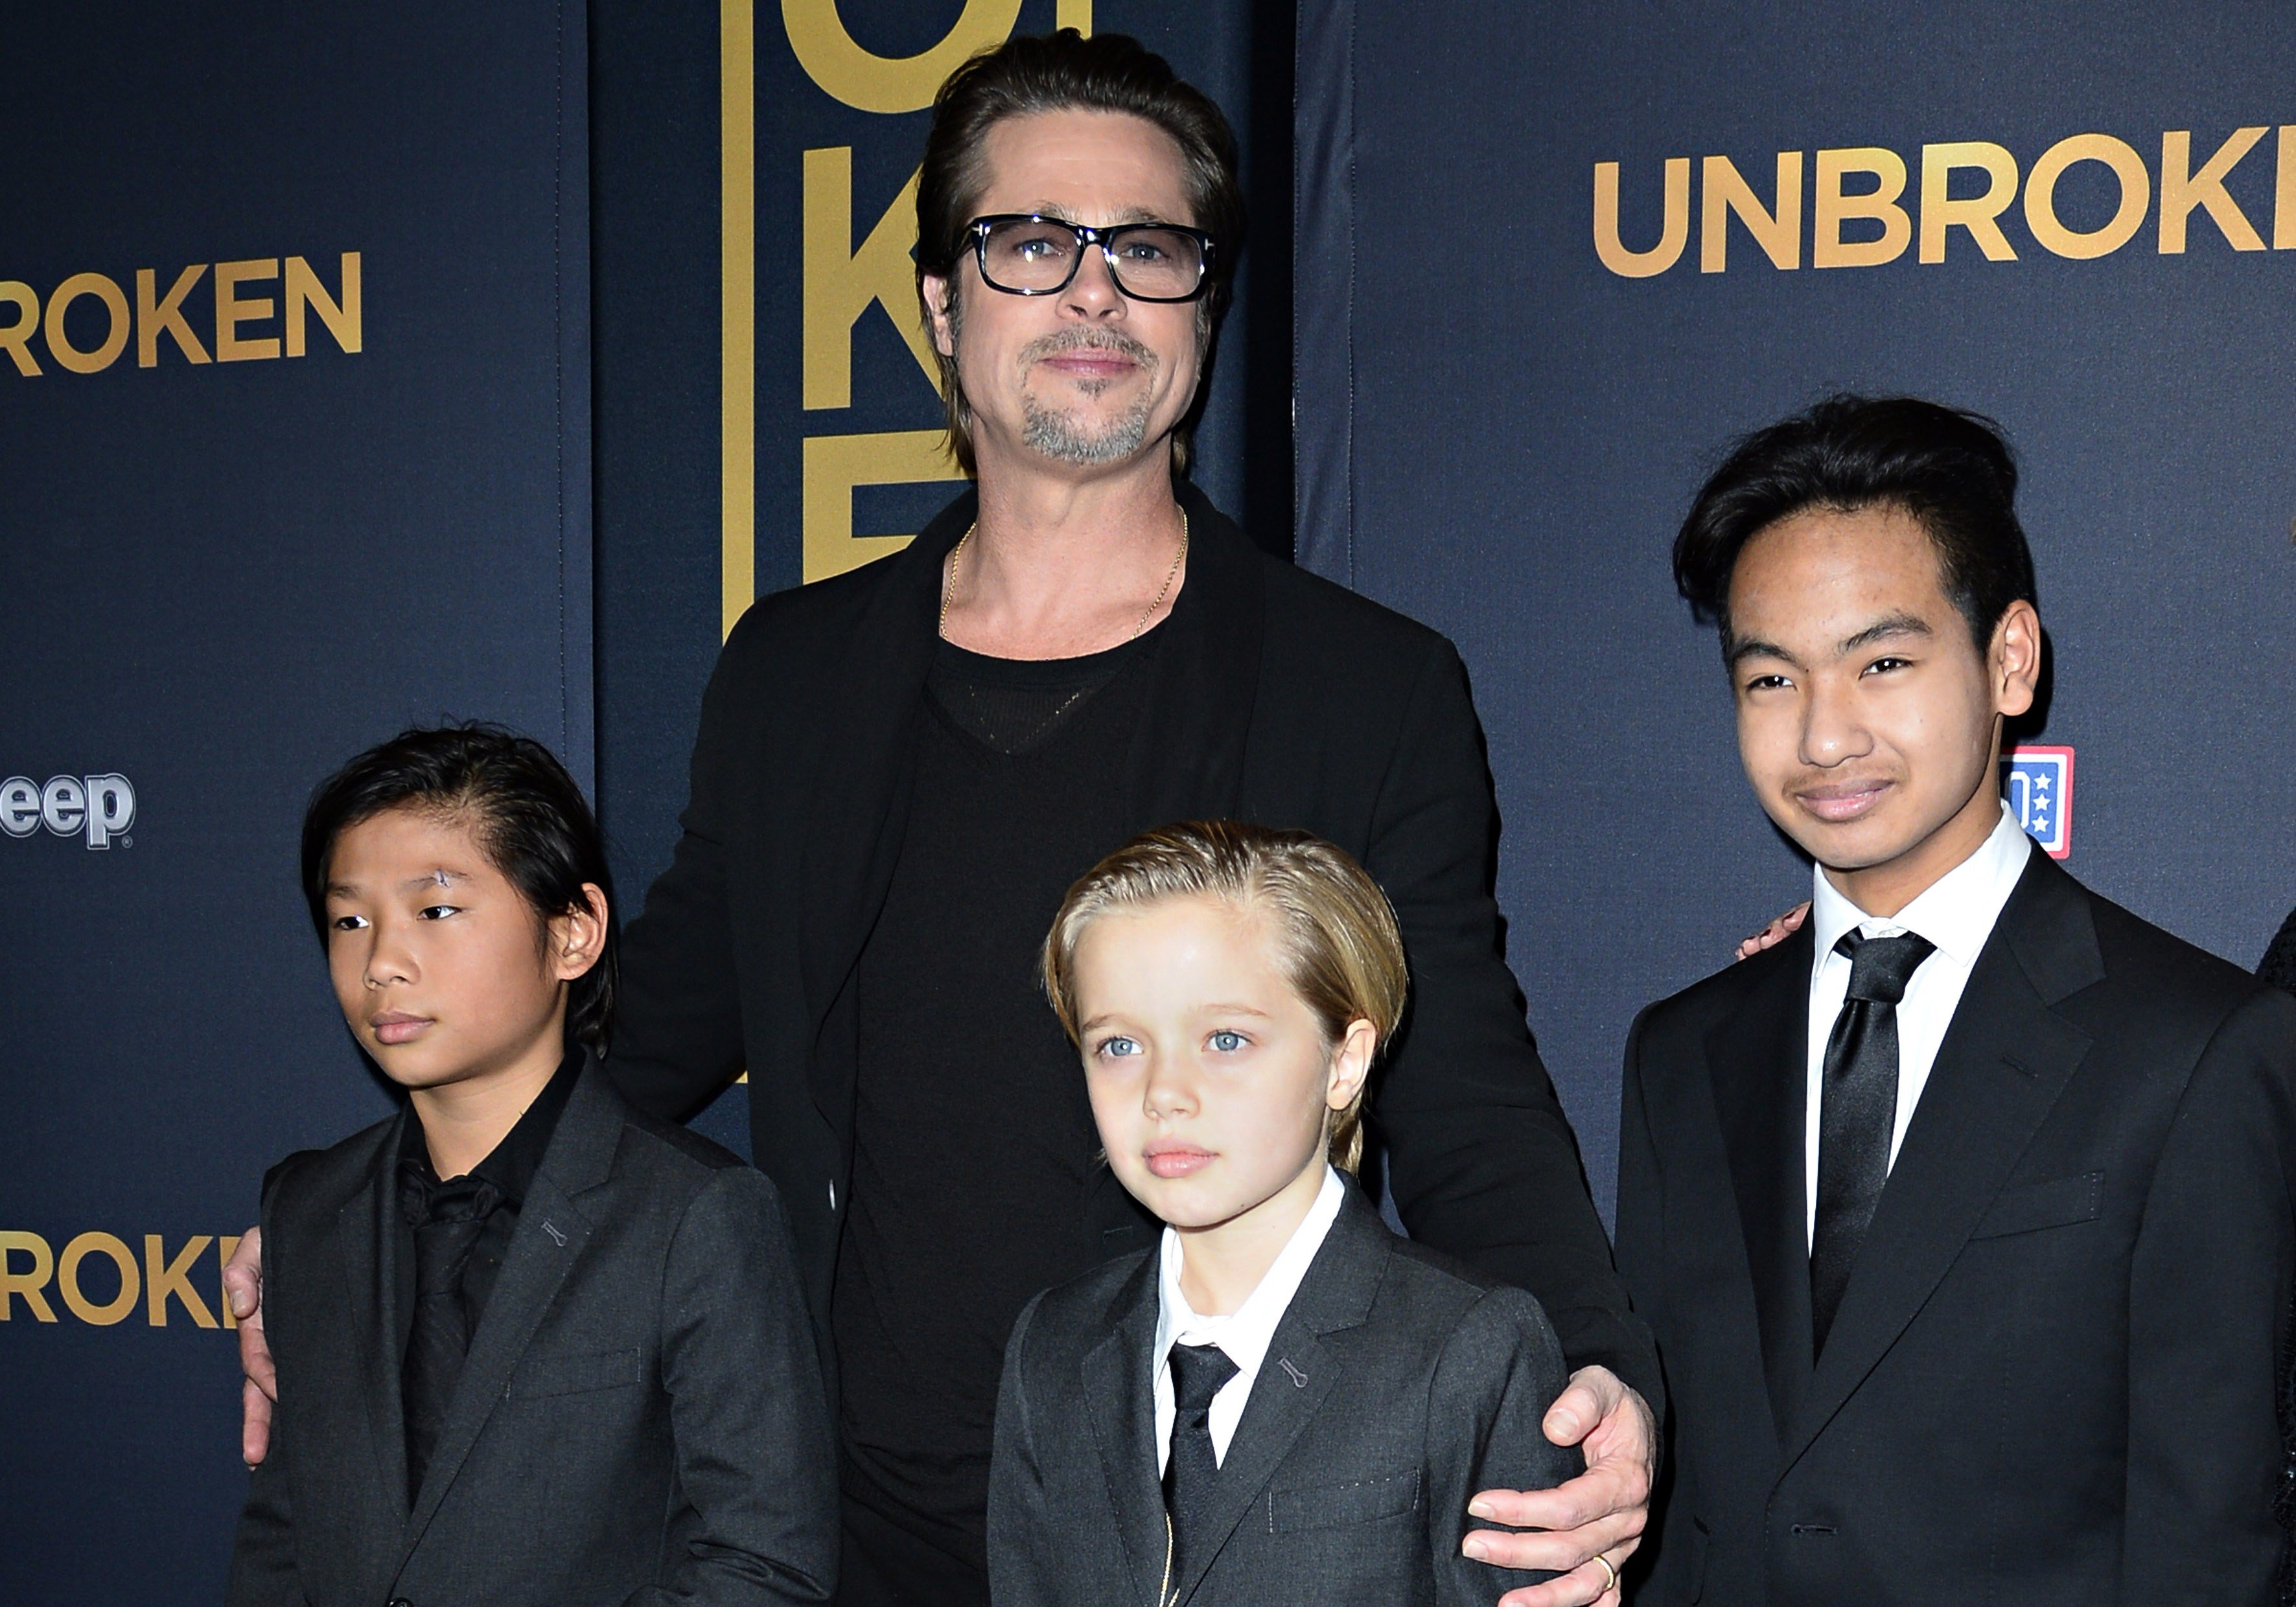 Brad Pitt und seine Kinder Pax, Shiloh und Maddox Jolie-Pitt bei der US-Premiere von "Unbroken" am 15. Dezember 2014 in Hollywood, Kalifornien | Quelle: Getty Images